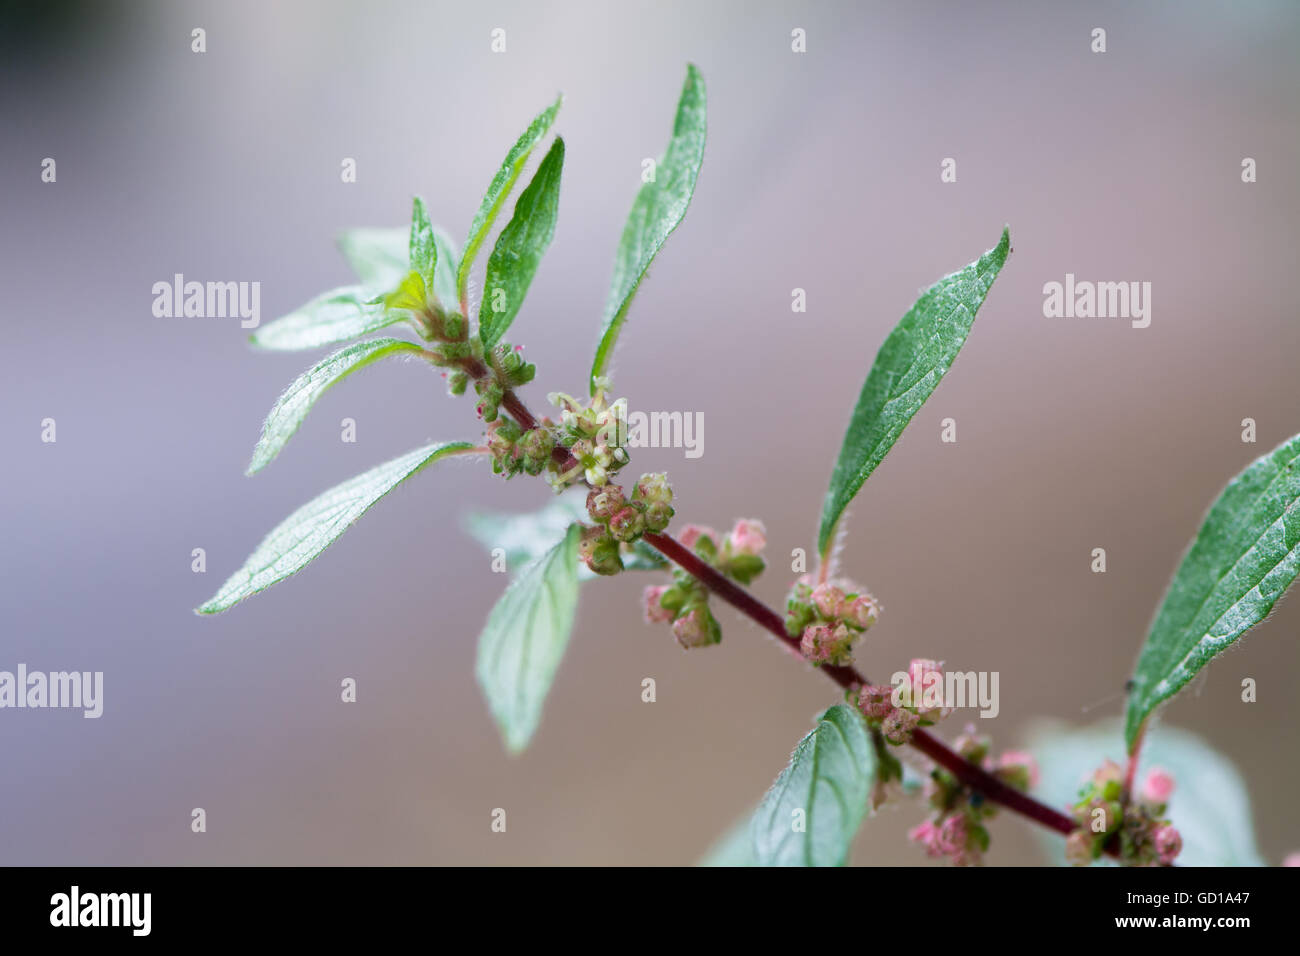 Pellitory-di-il-parete (Parietaria judaica). Le foglie e i fiori della pianta nella famiglia di ortica (Urticaceea) cresce su una parete Foto Stock